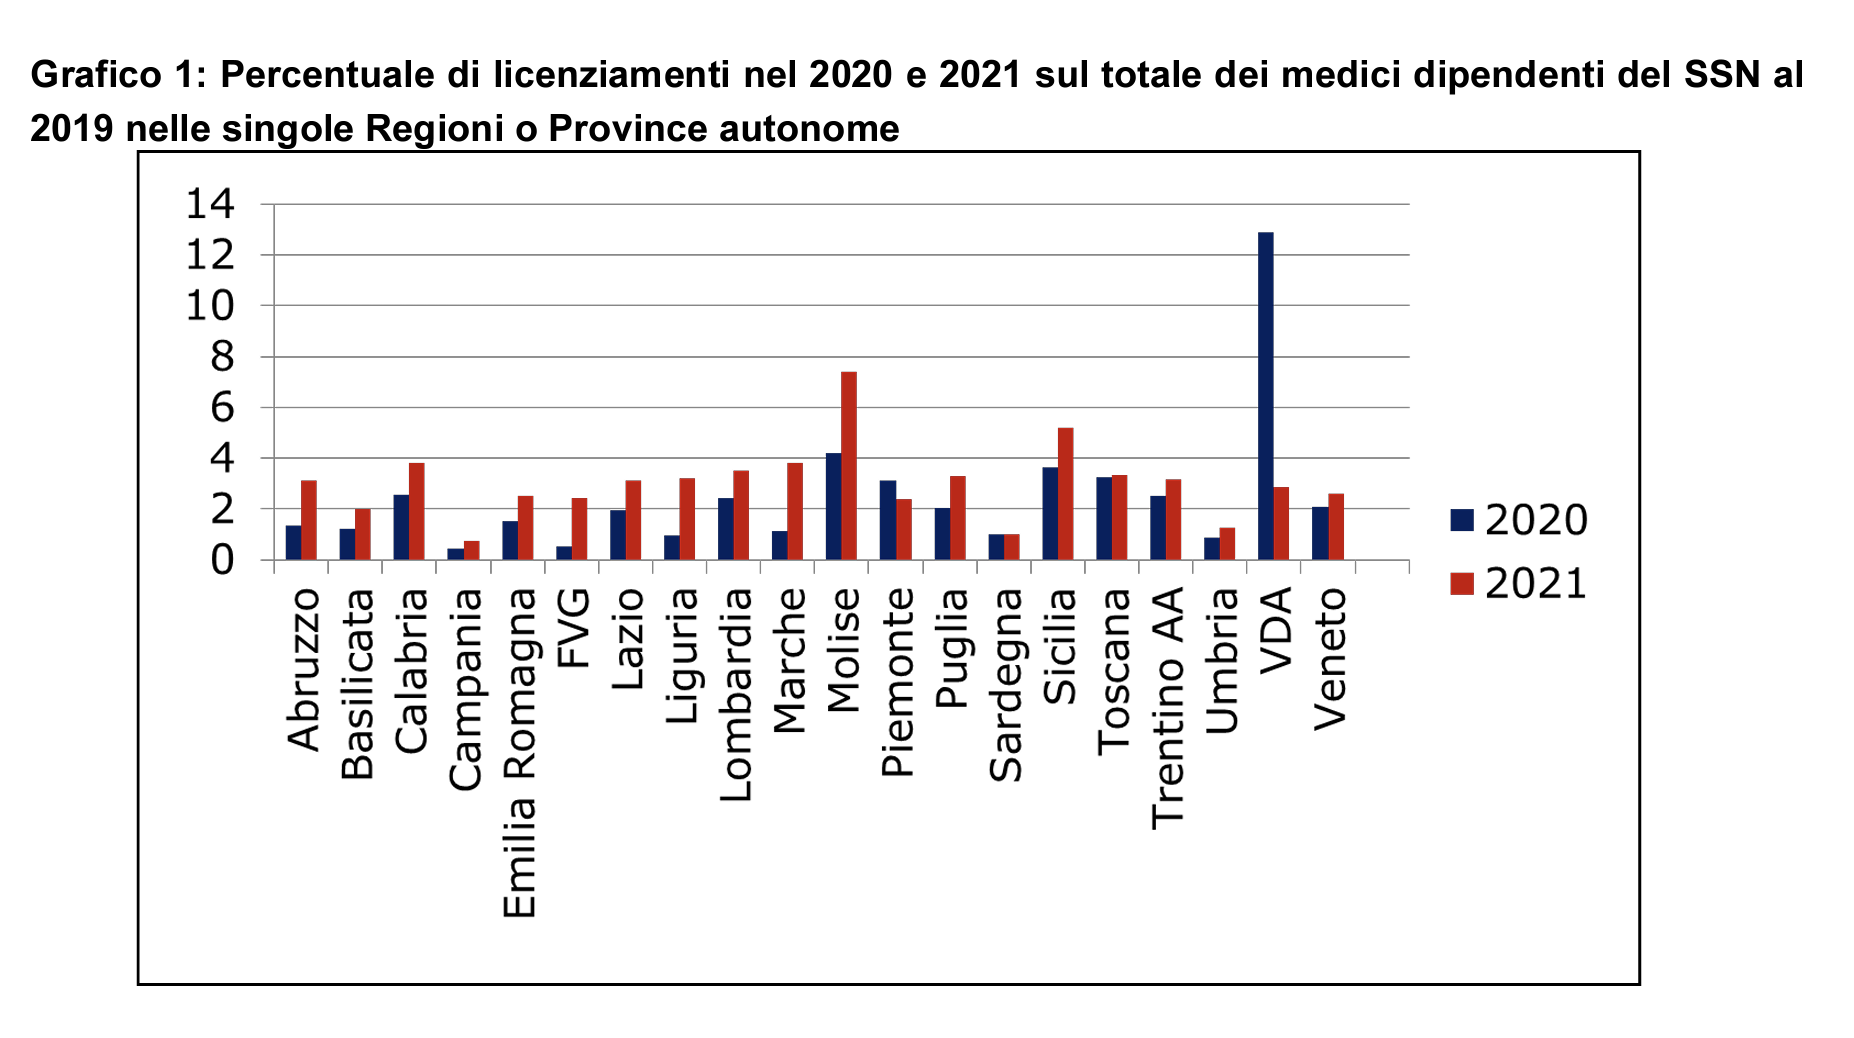 Percentuale di licenziamenti nel 2020 e 2021 sul totale dei medici dipendenti del SSN al 2019 nelle singole Regioni o Province autonome 